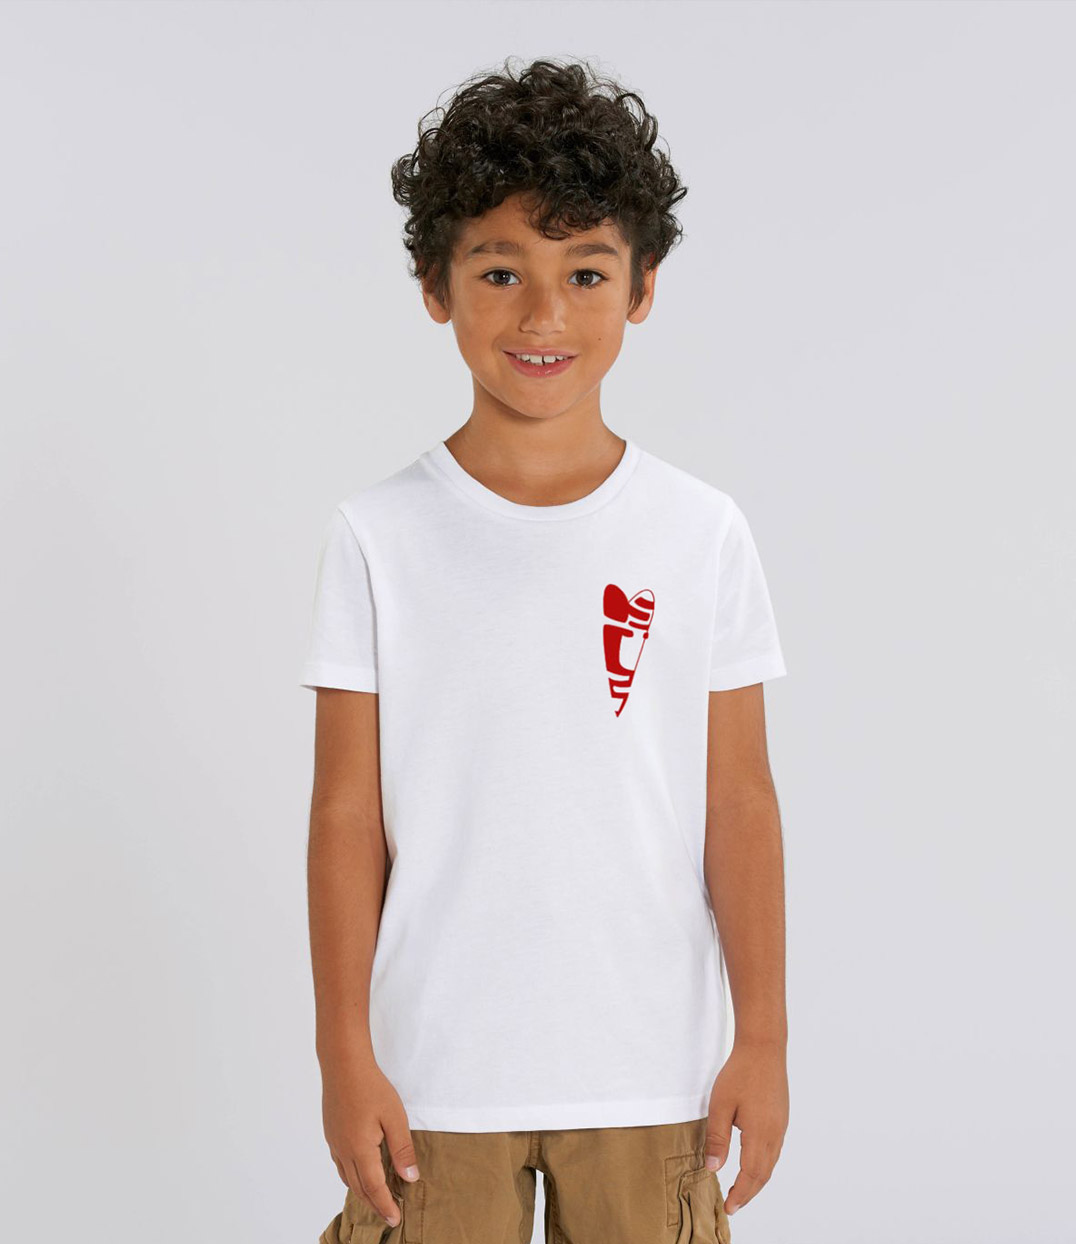 enfant garçon portant un t-shirt de la collection abracito de la marque lyonnaise Leonor roversi collection enfant t-shirt avec un coeur